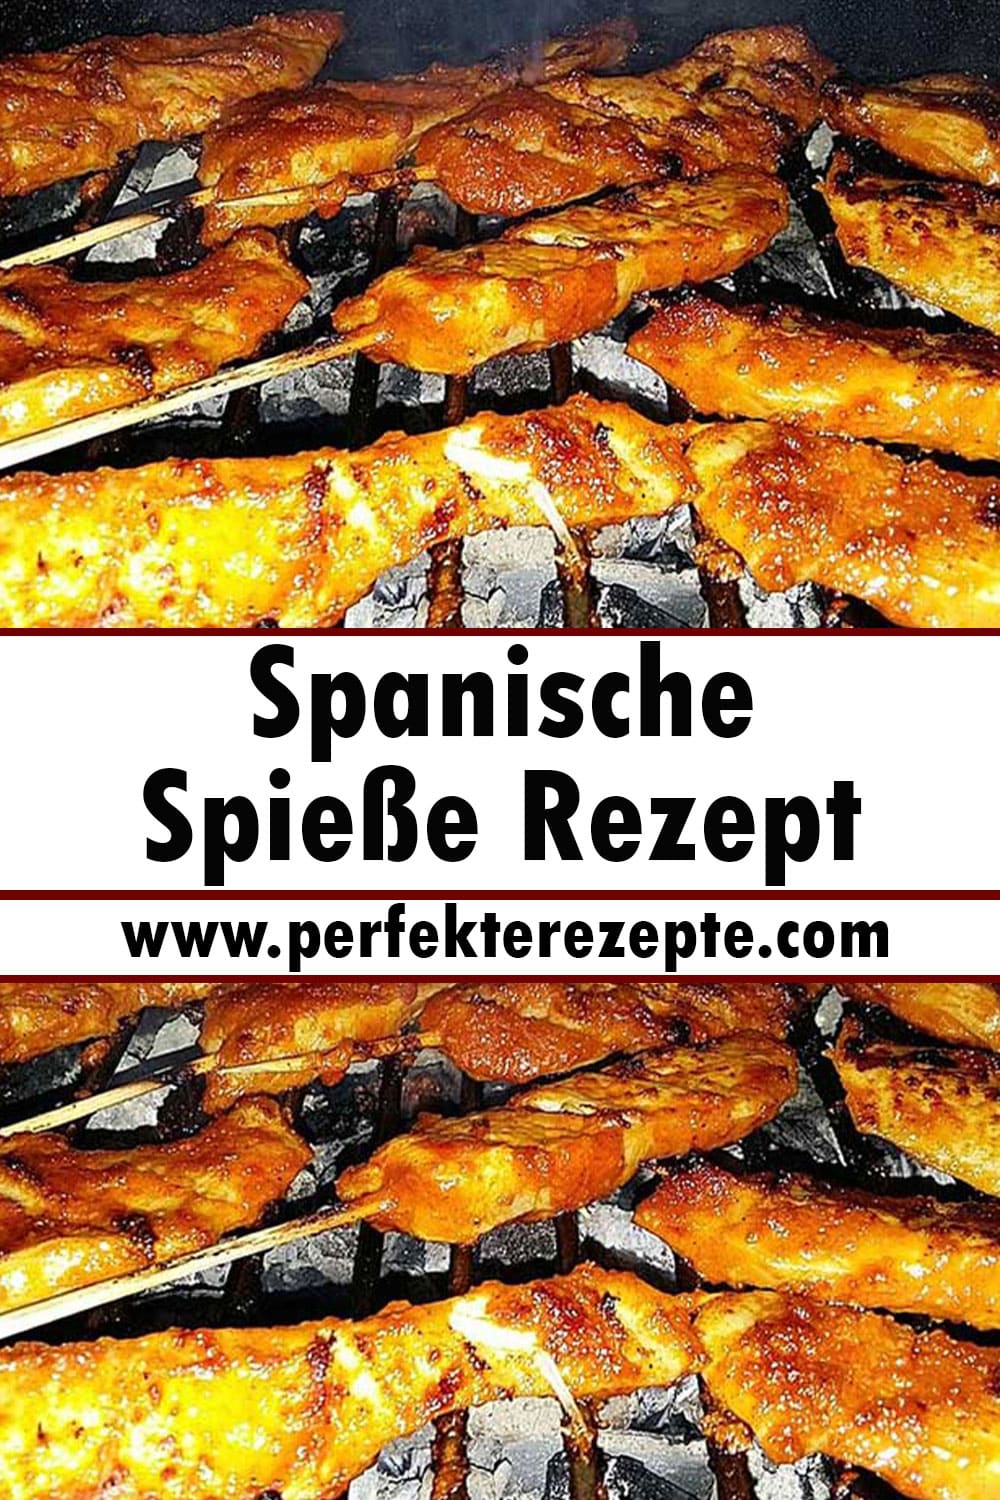 Spanische Spieße Rezept